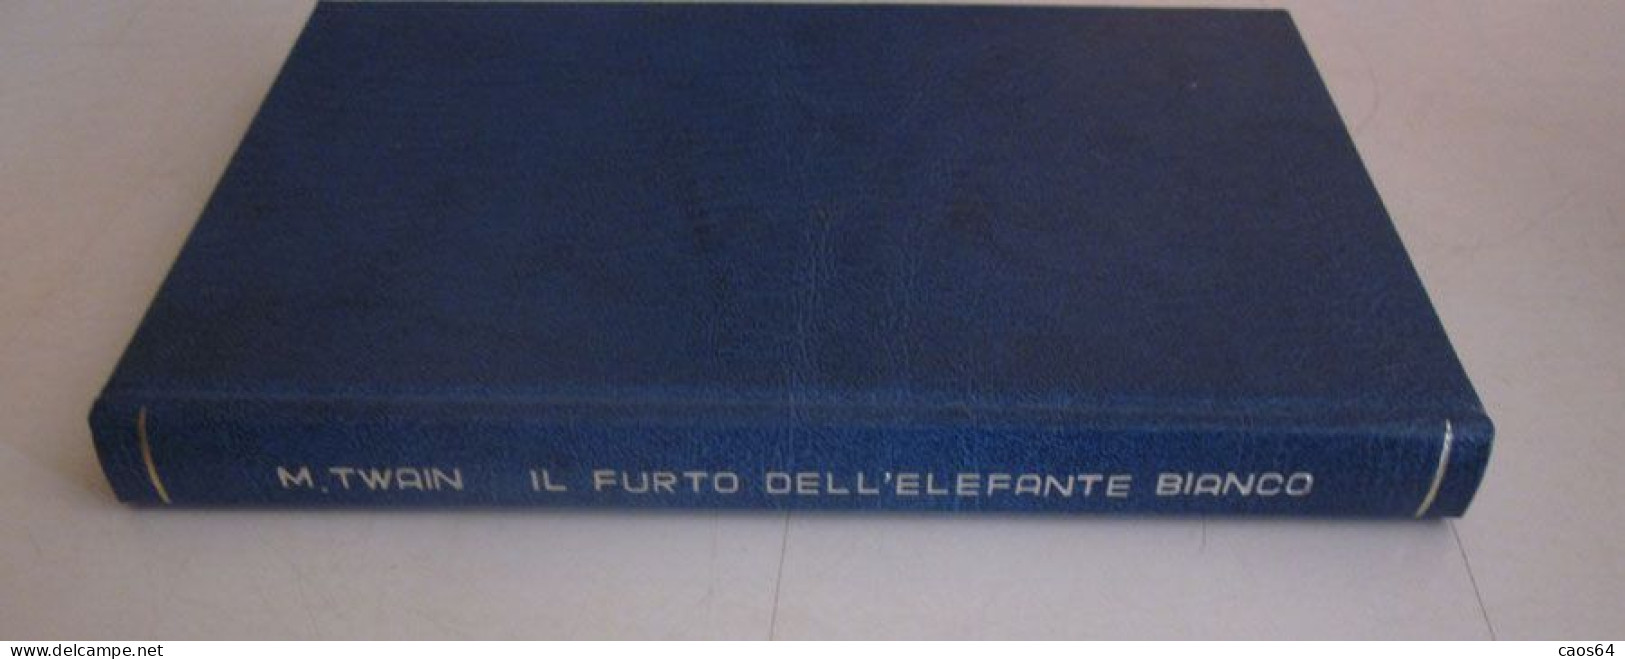 Il Furto Dell'elefante Bianco Mark Twain Rizzoli BUR 1952 - Classici